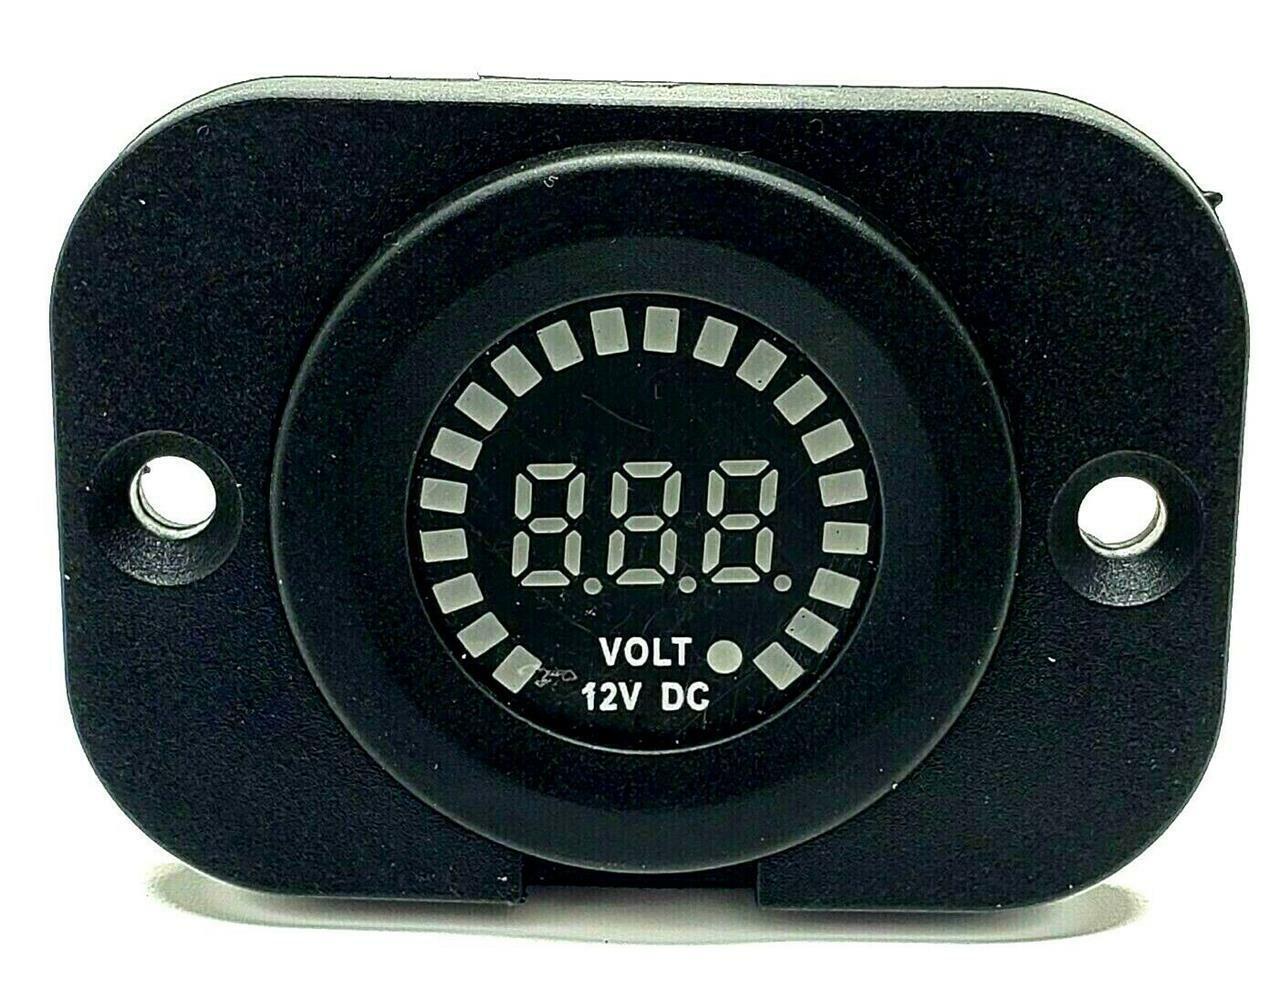 12v gauge, 12v car voltmeter, 12v digital gauge